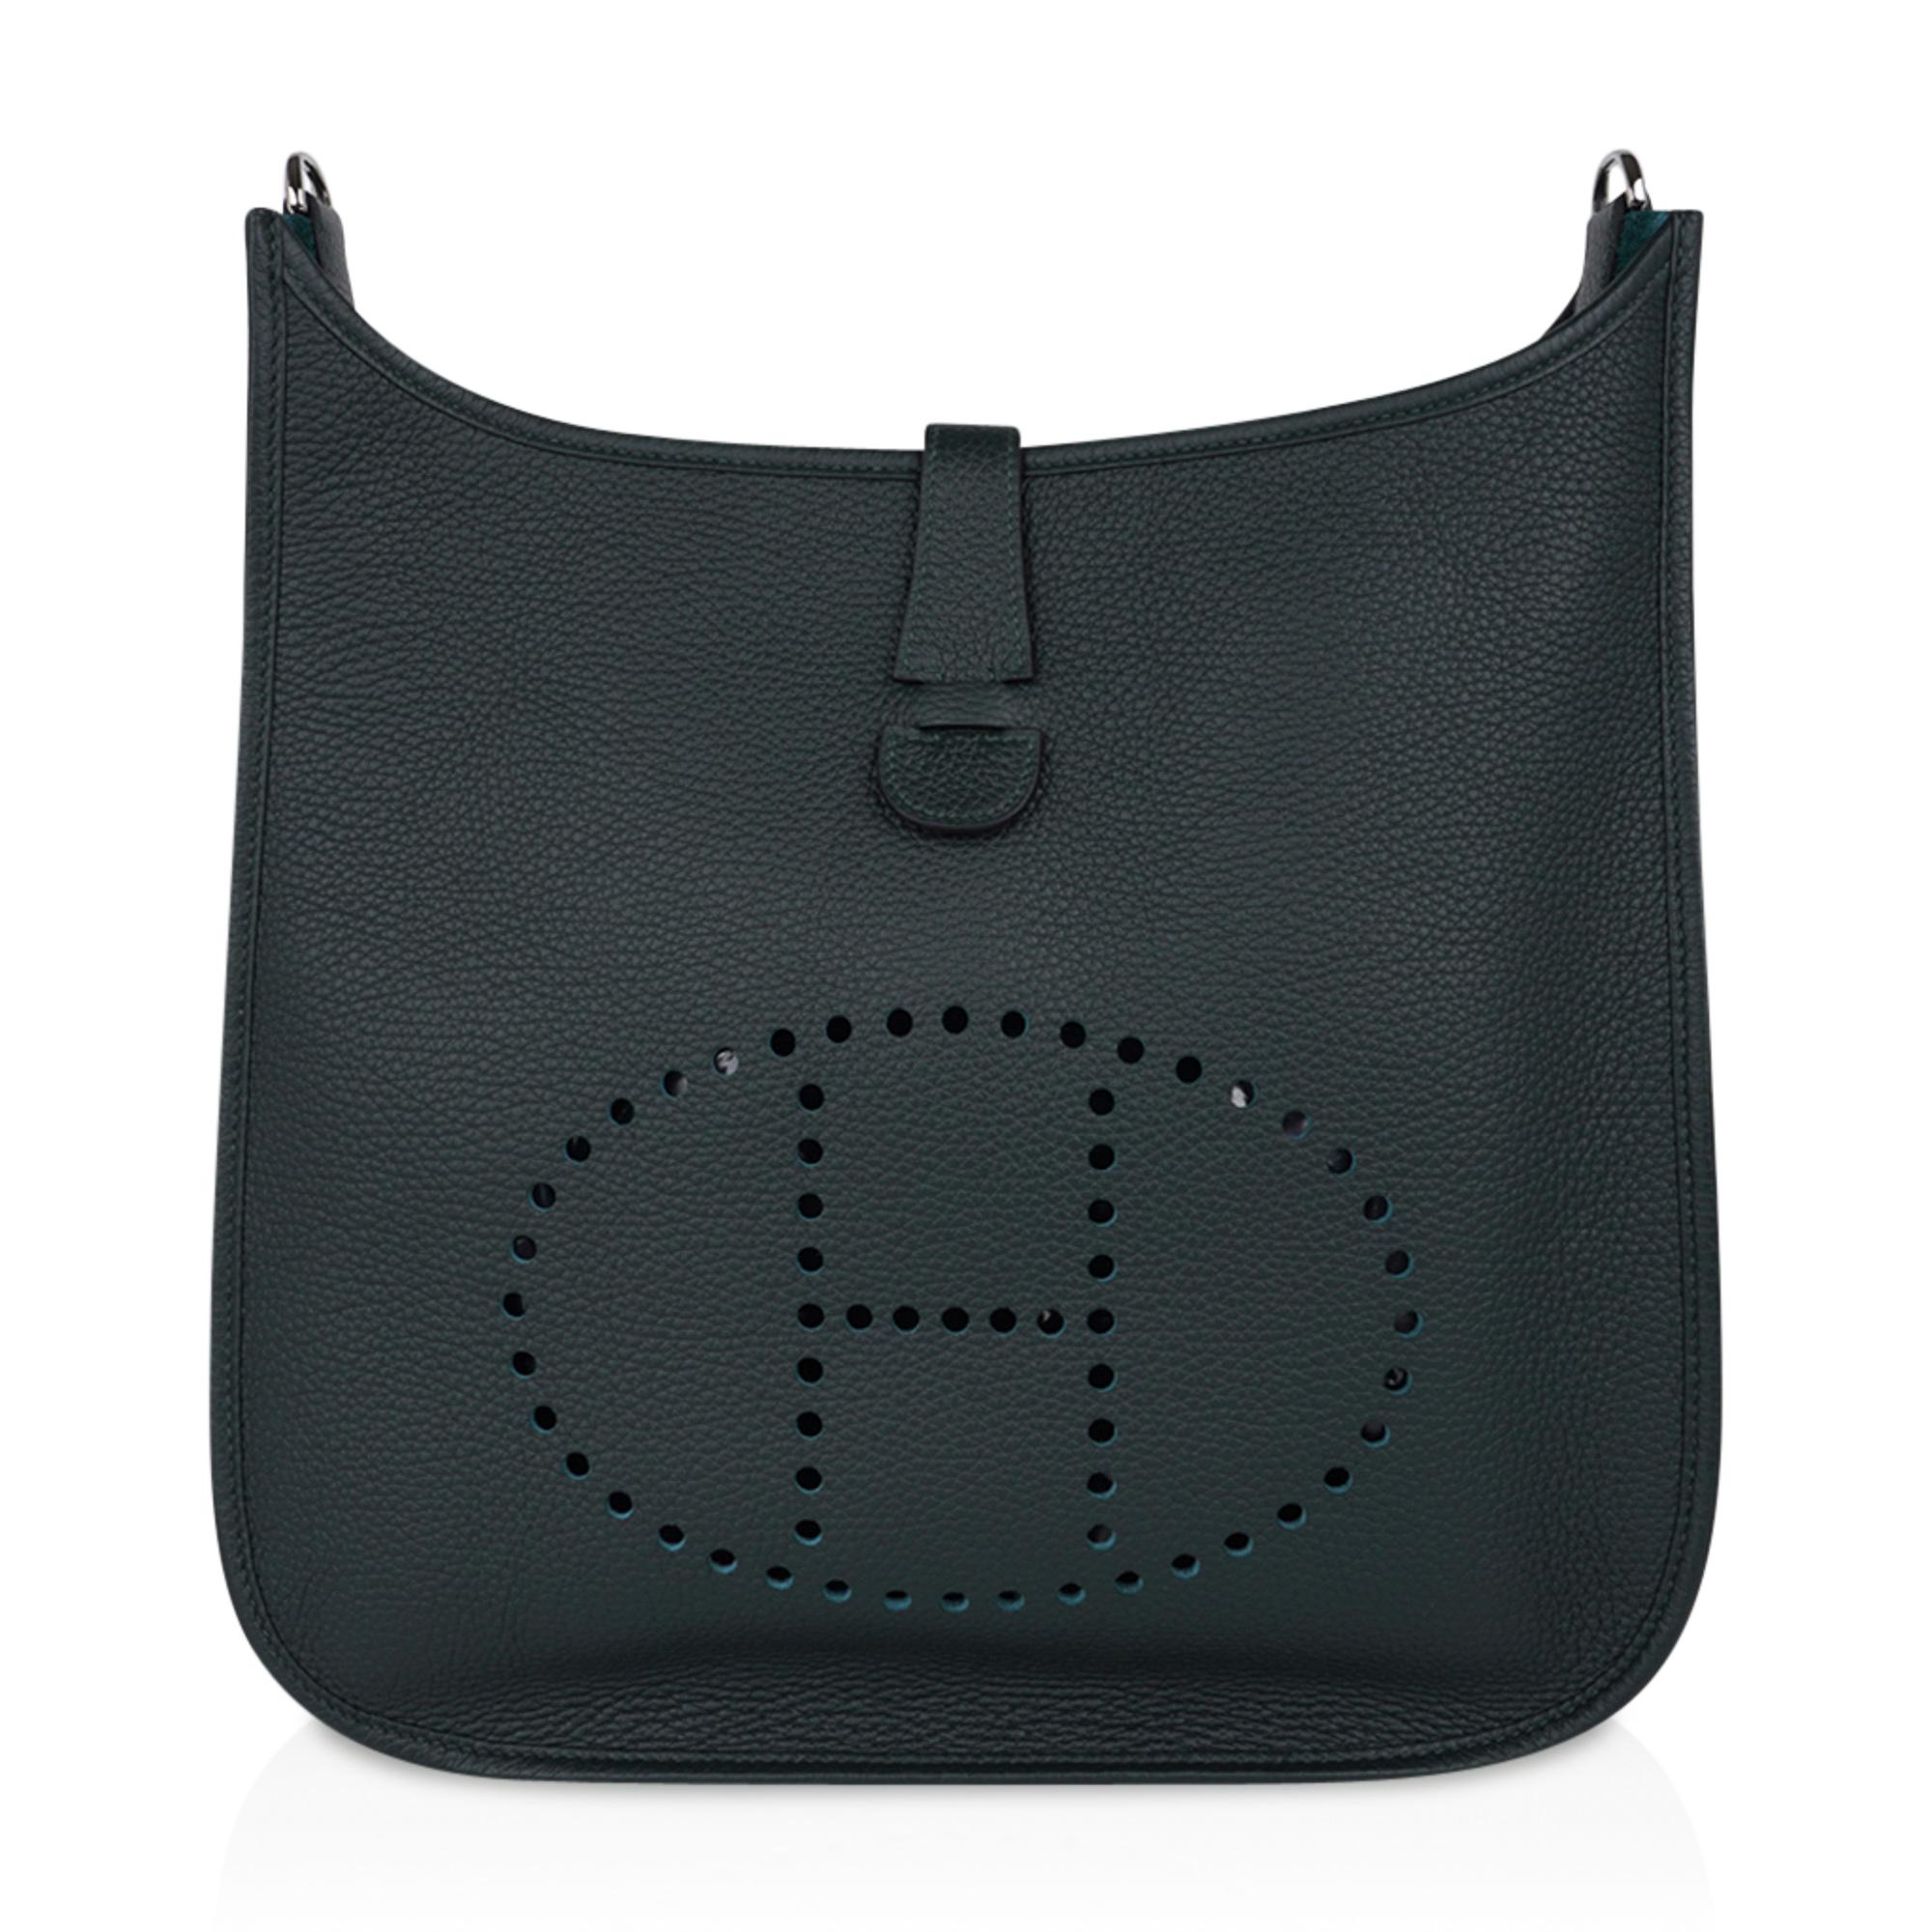 Black Hermes Bag Evelyne GM Vert Fonce Clemence Palladium Hardware New w/ Box